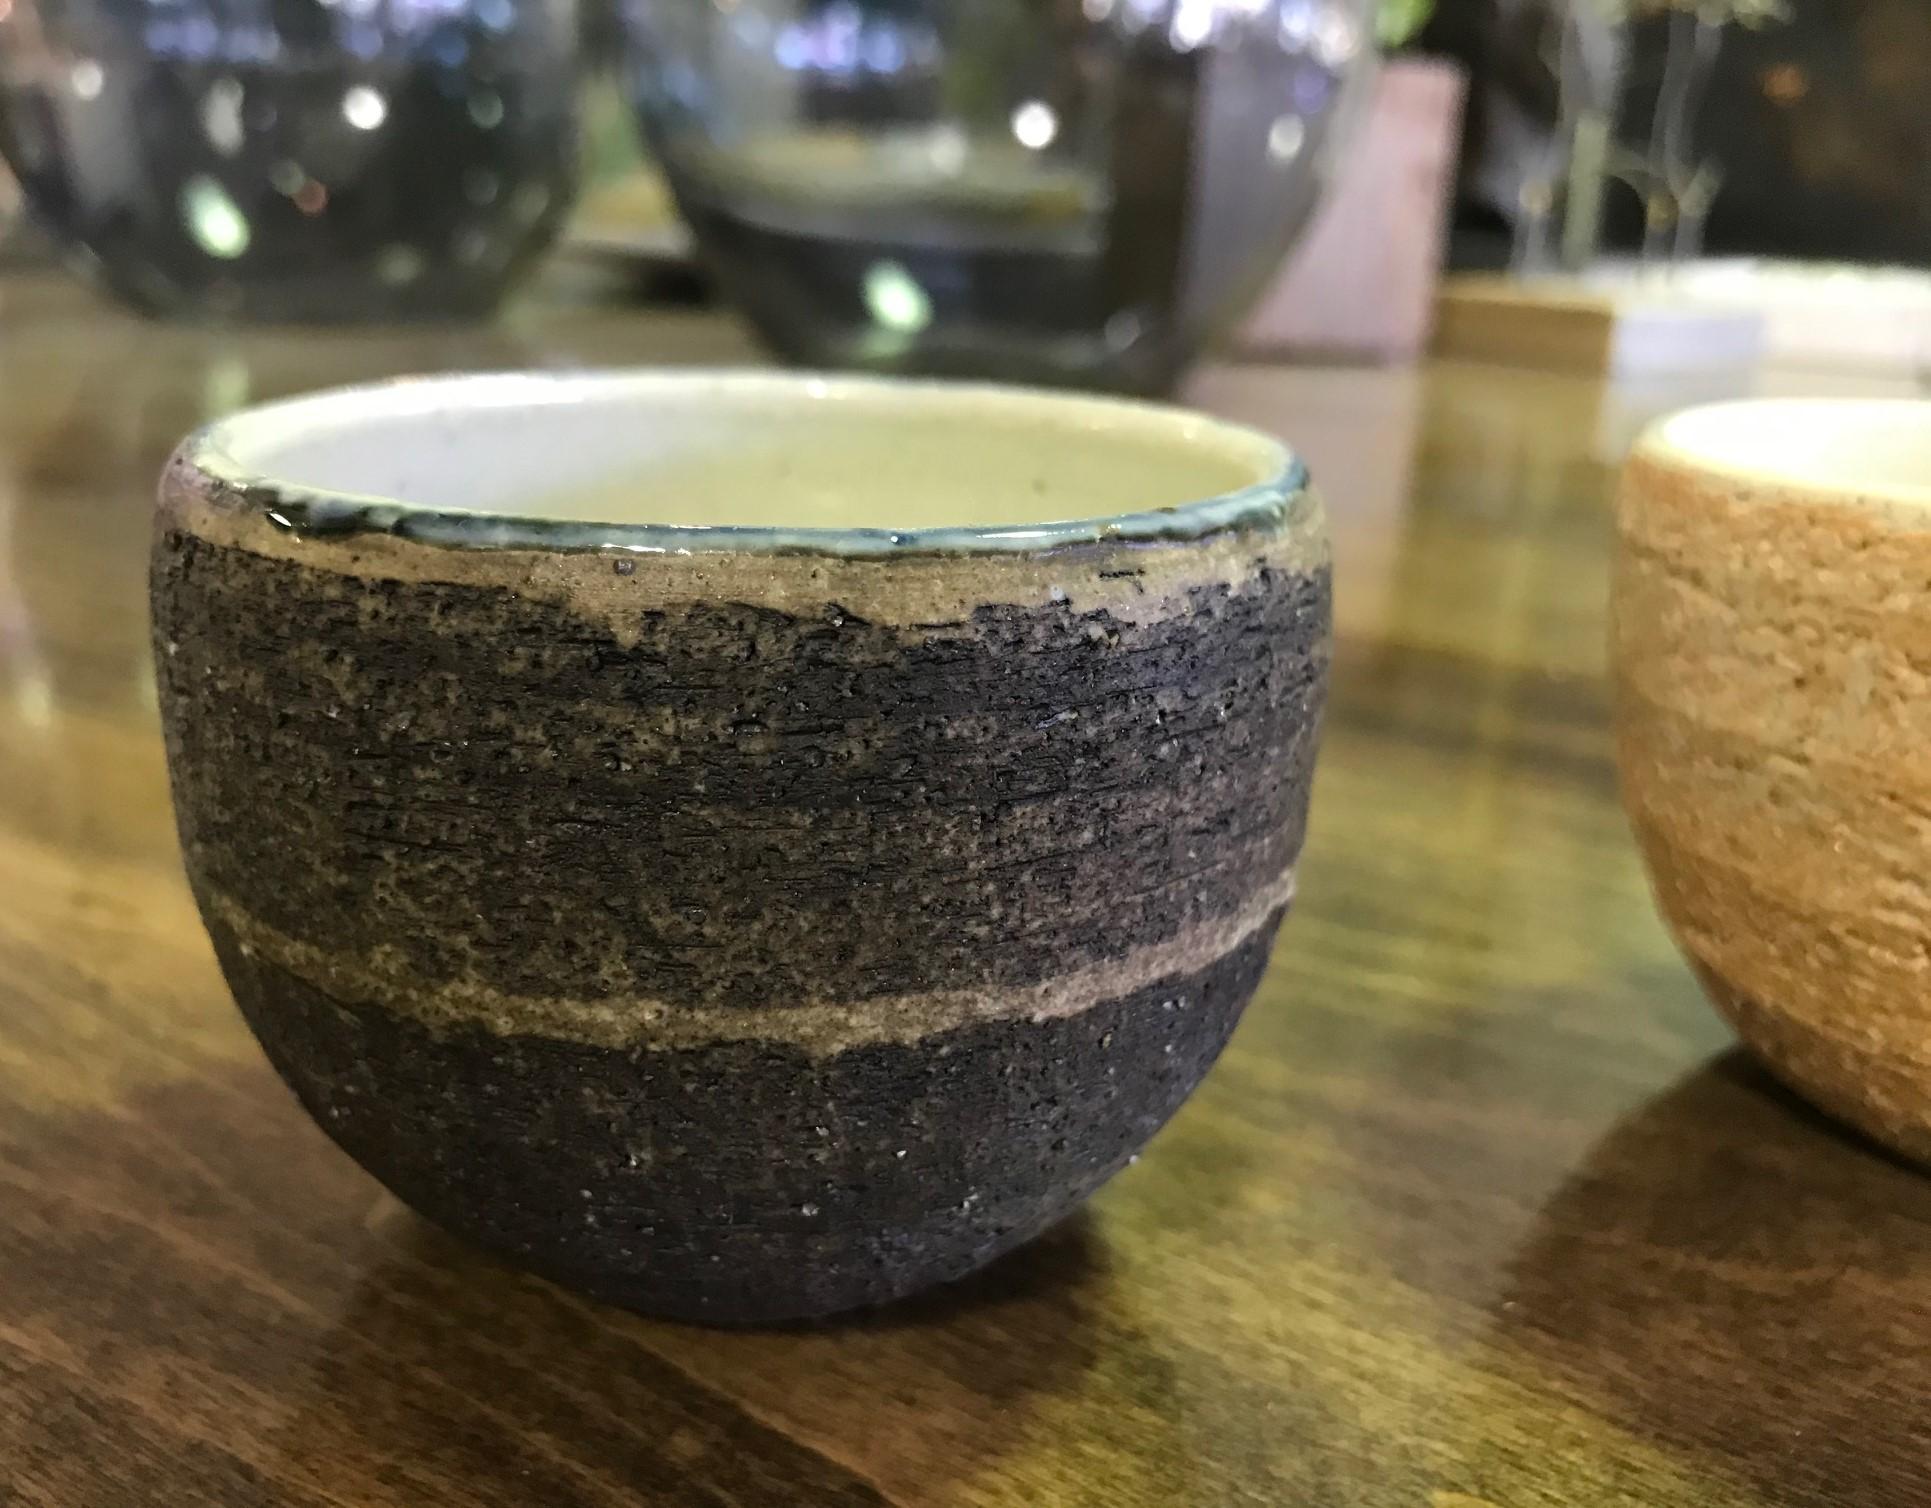 Tasse à thé japonaise merveilleusement fabriquée et conçue. Superbe texture et couleur.

Probablement du milieu du siècle, période Showa, mais peut-être plus ancien.

Artisanat de qualité. Très attrayant.

Veuillez noter que la tasse